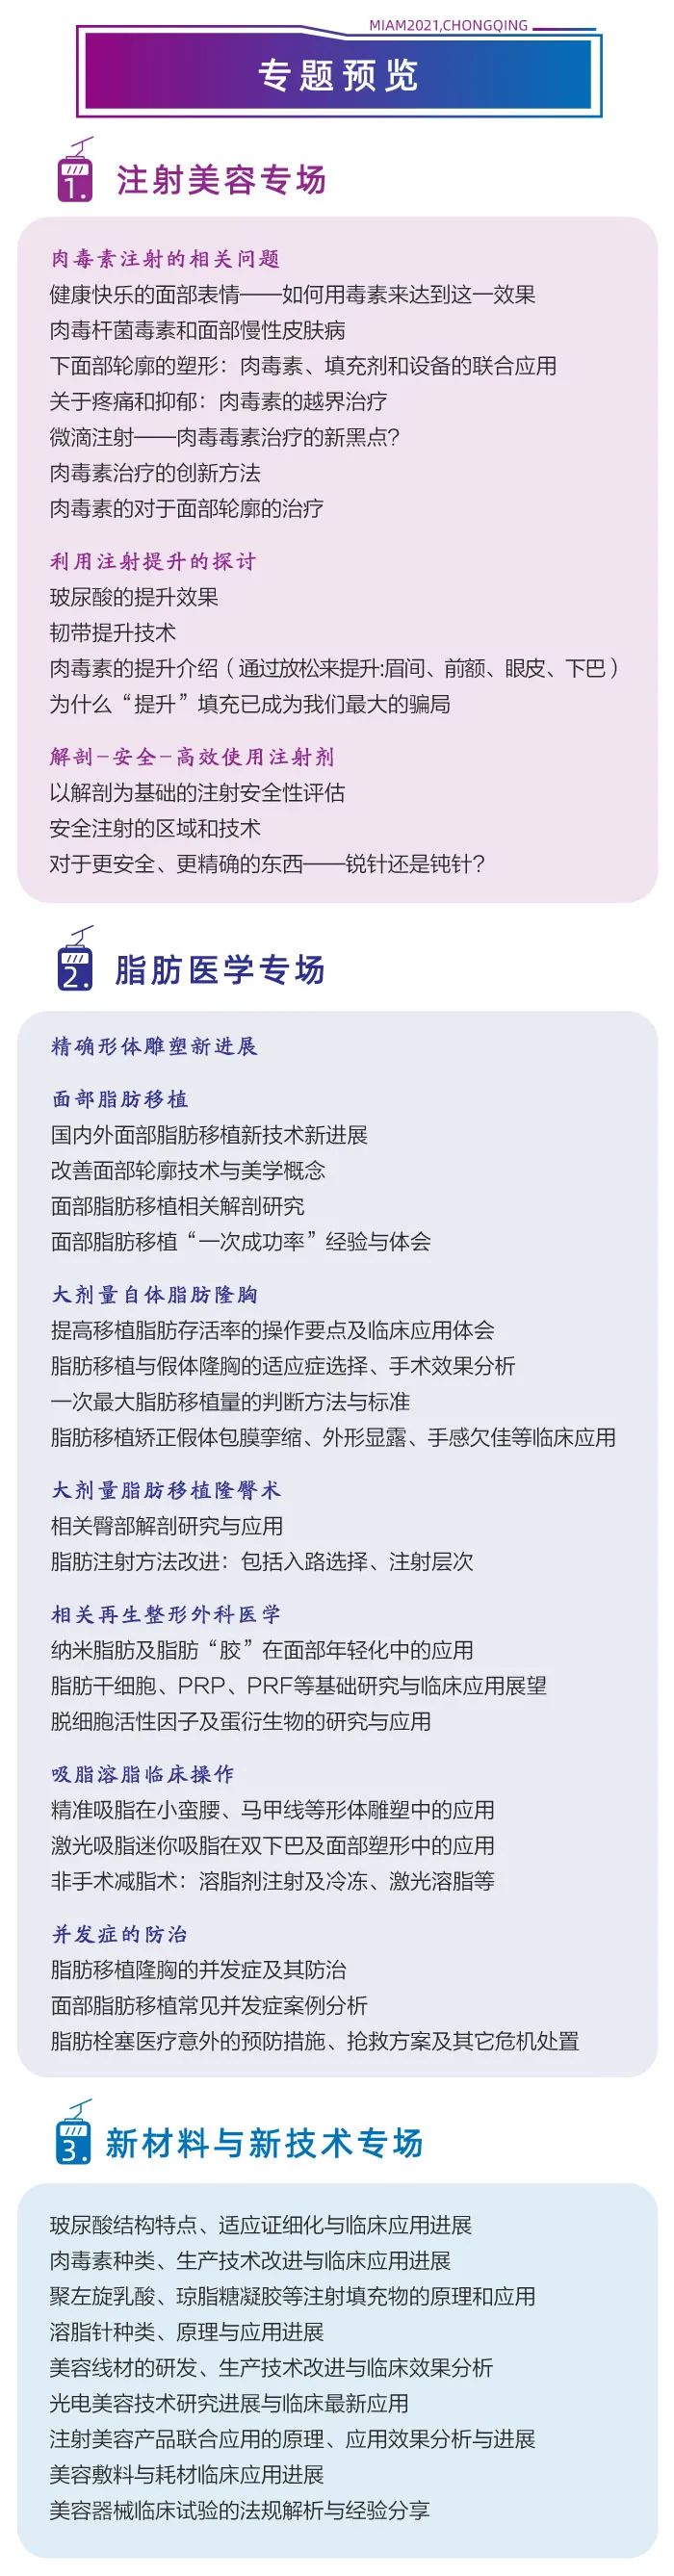 第十届全国微创医学美容大会将于9月3日在重庆召开6.jpeg